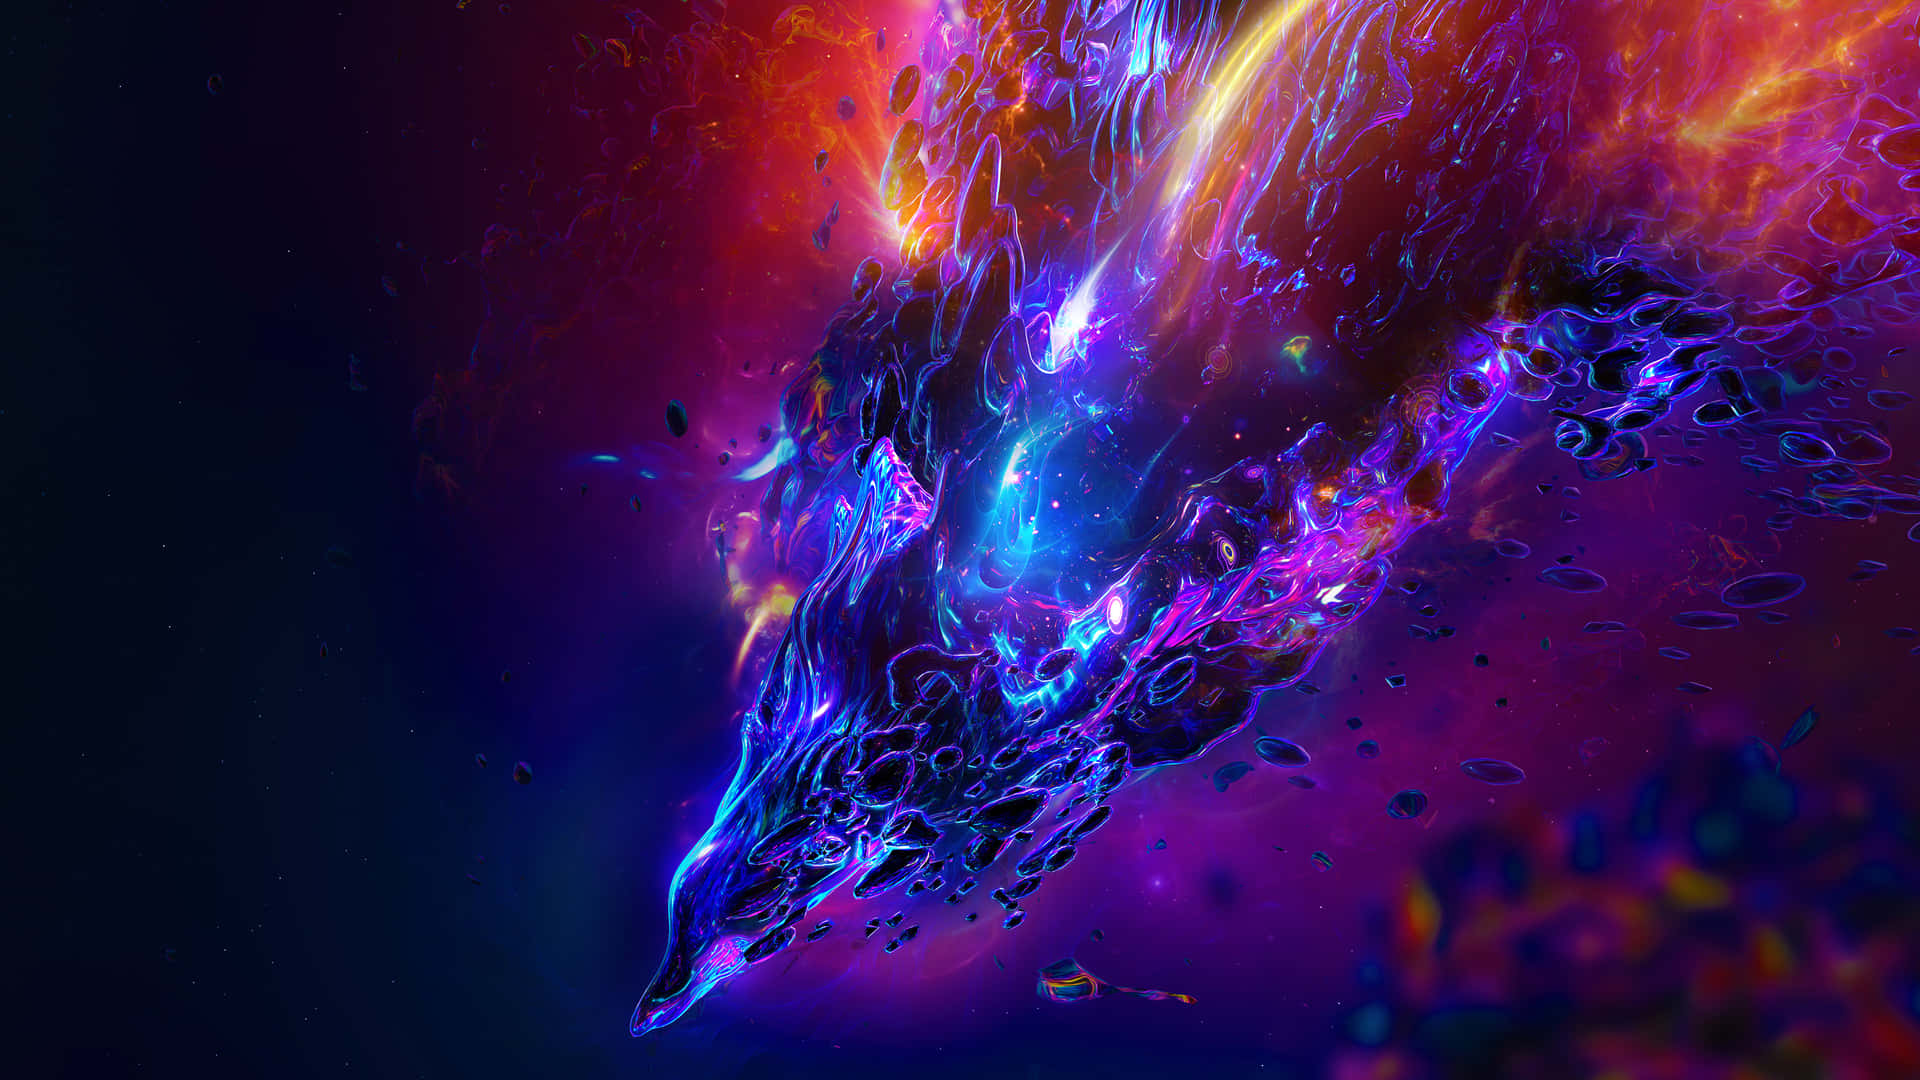 Einfarbenfrohes Bild Eines Raumschiffs Mit Einem Blauen Und Violetten Hintergrund. Wallpaper